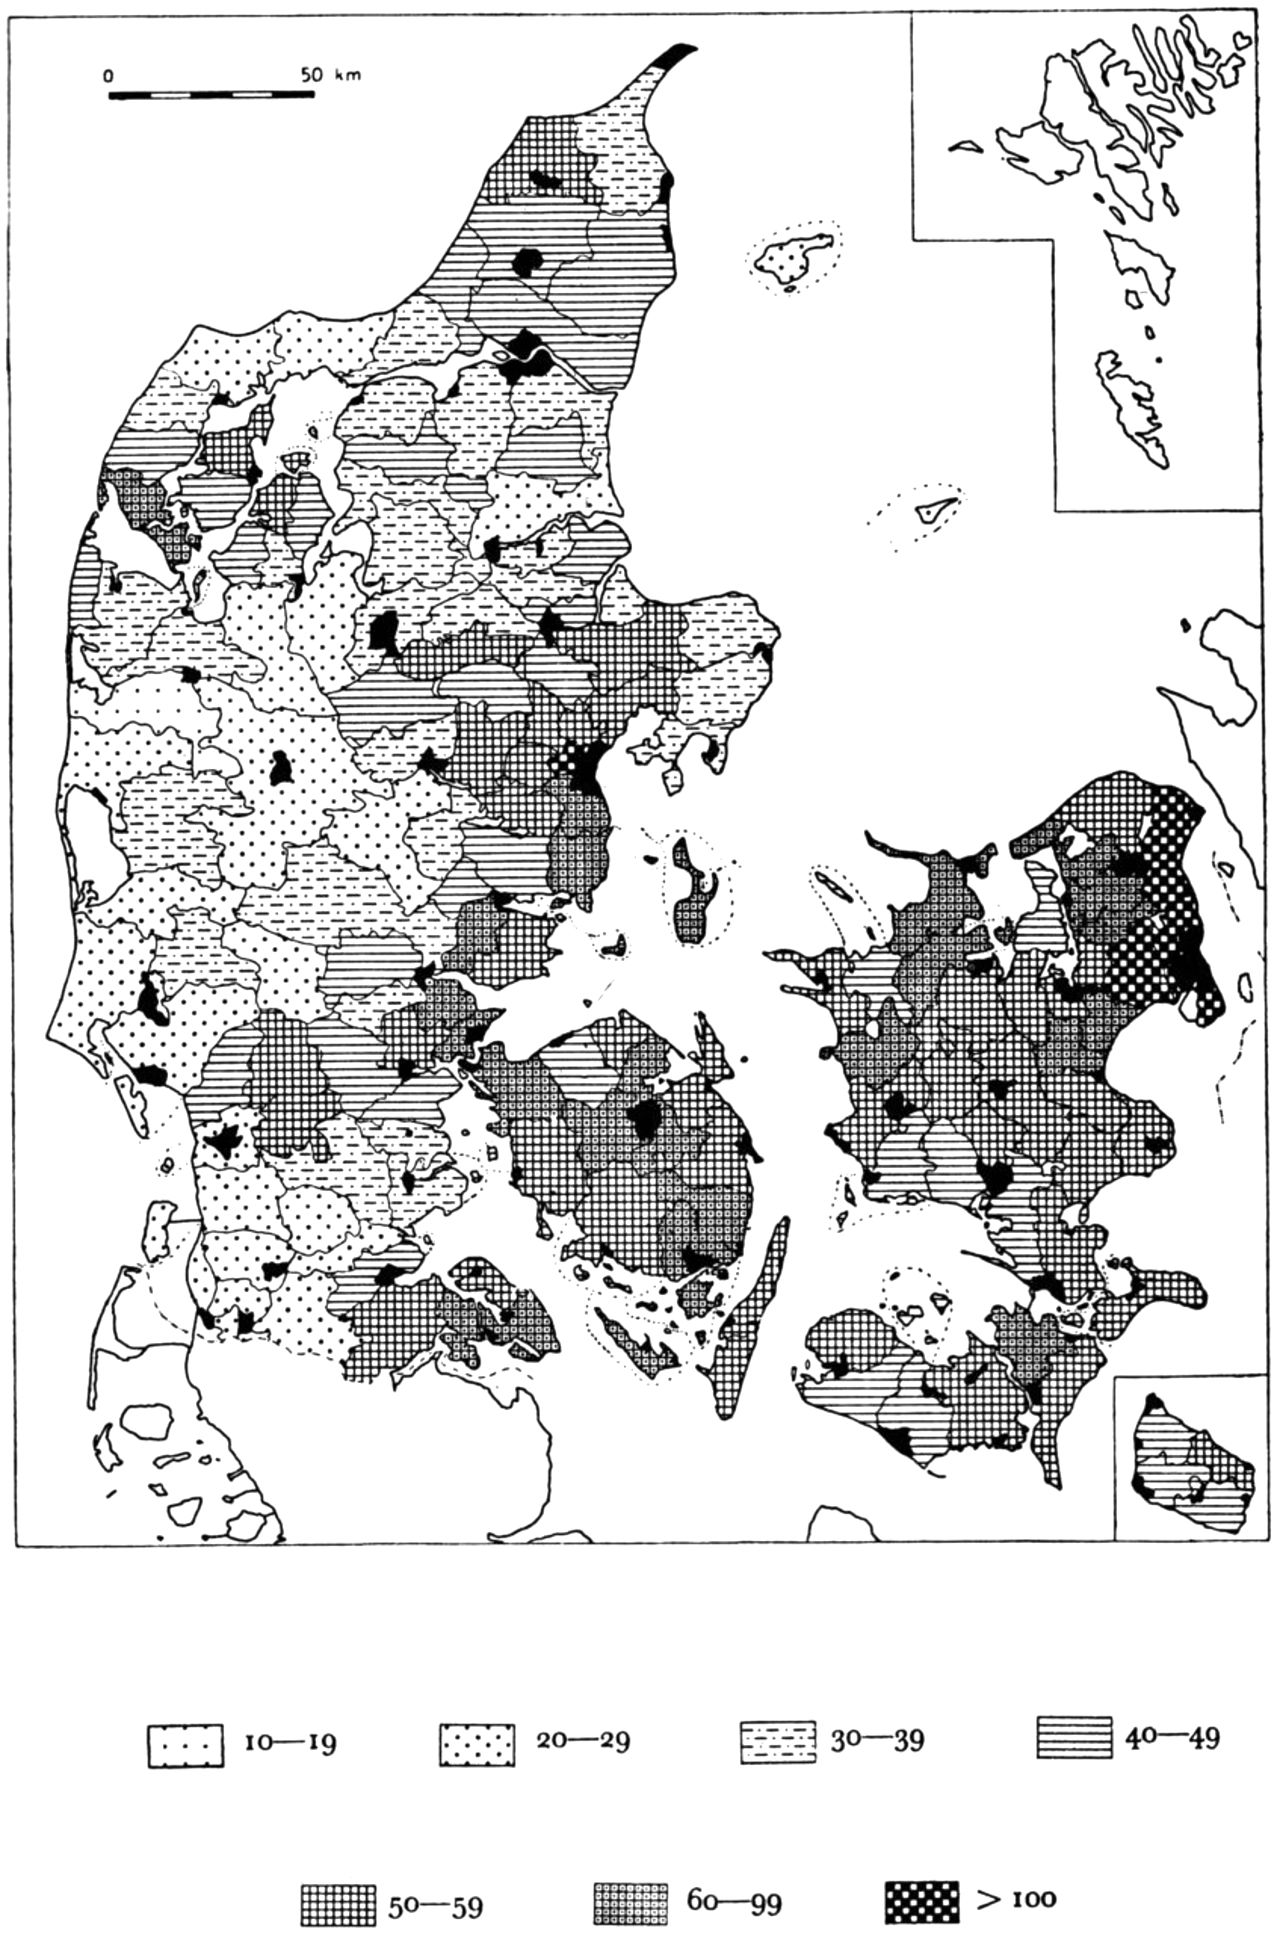 (Kort). Befolkningstætheden 1950. (Indb. pr. km2).Med sort er angivet byerne med deres evt. forstæder; dog er Kbh. undtaget.